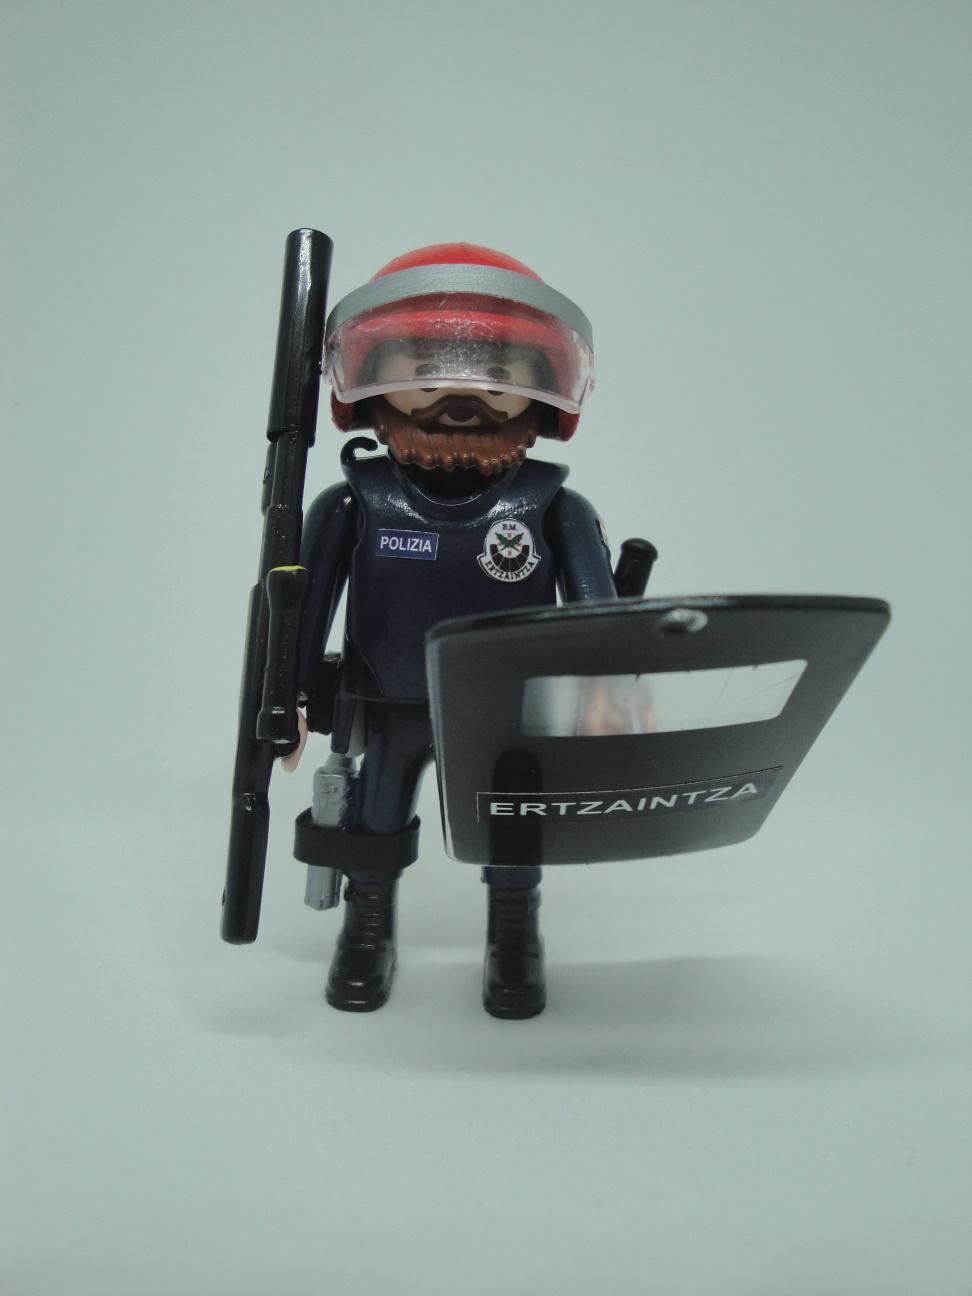 Playmobil Ertzaintza policía país vasco personalizado con uniforme de la Brigada Móvil antidisturbios hombre